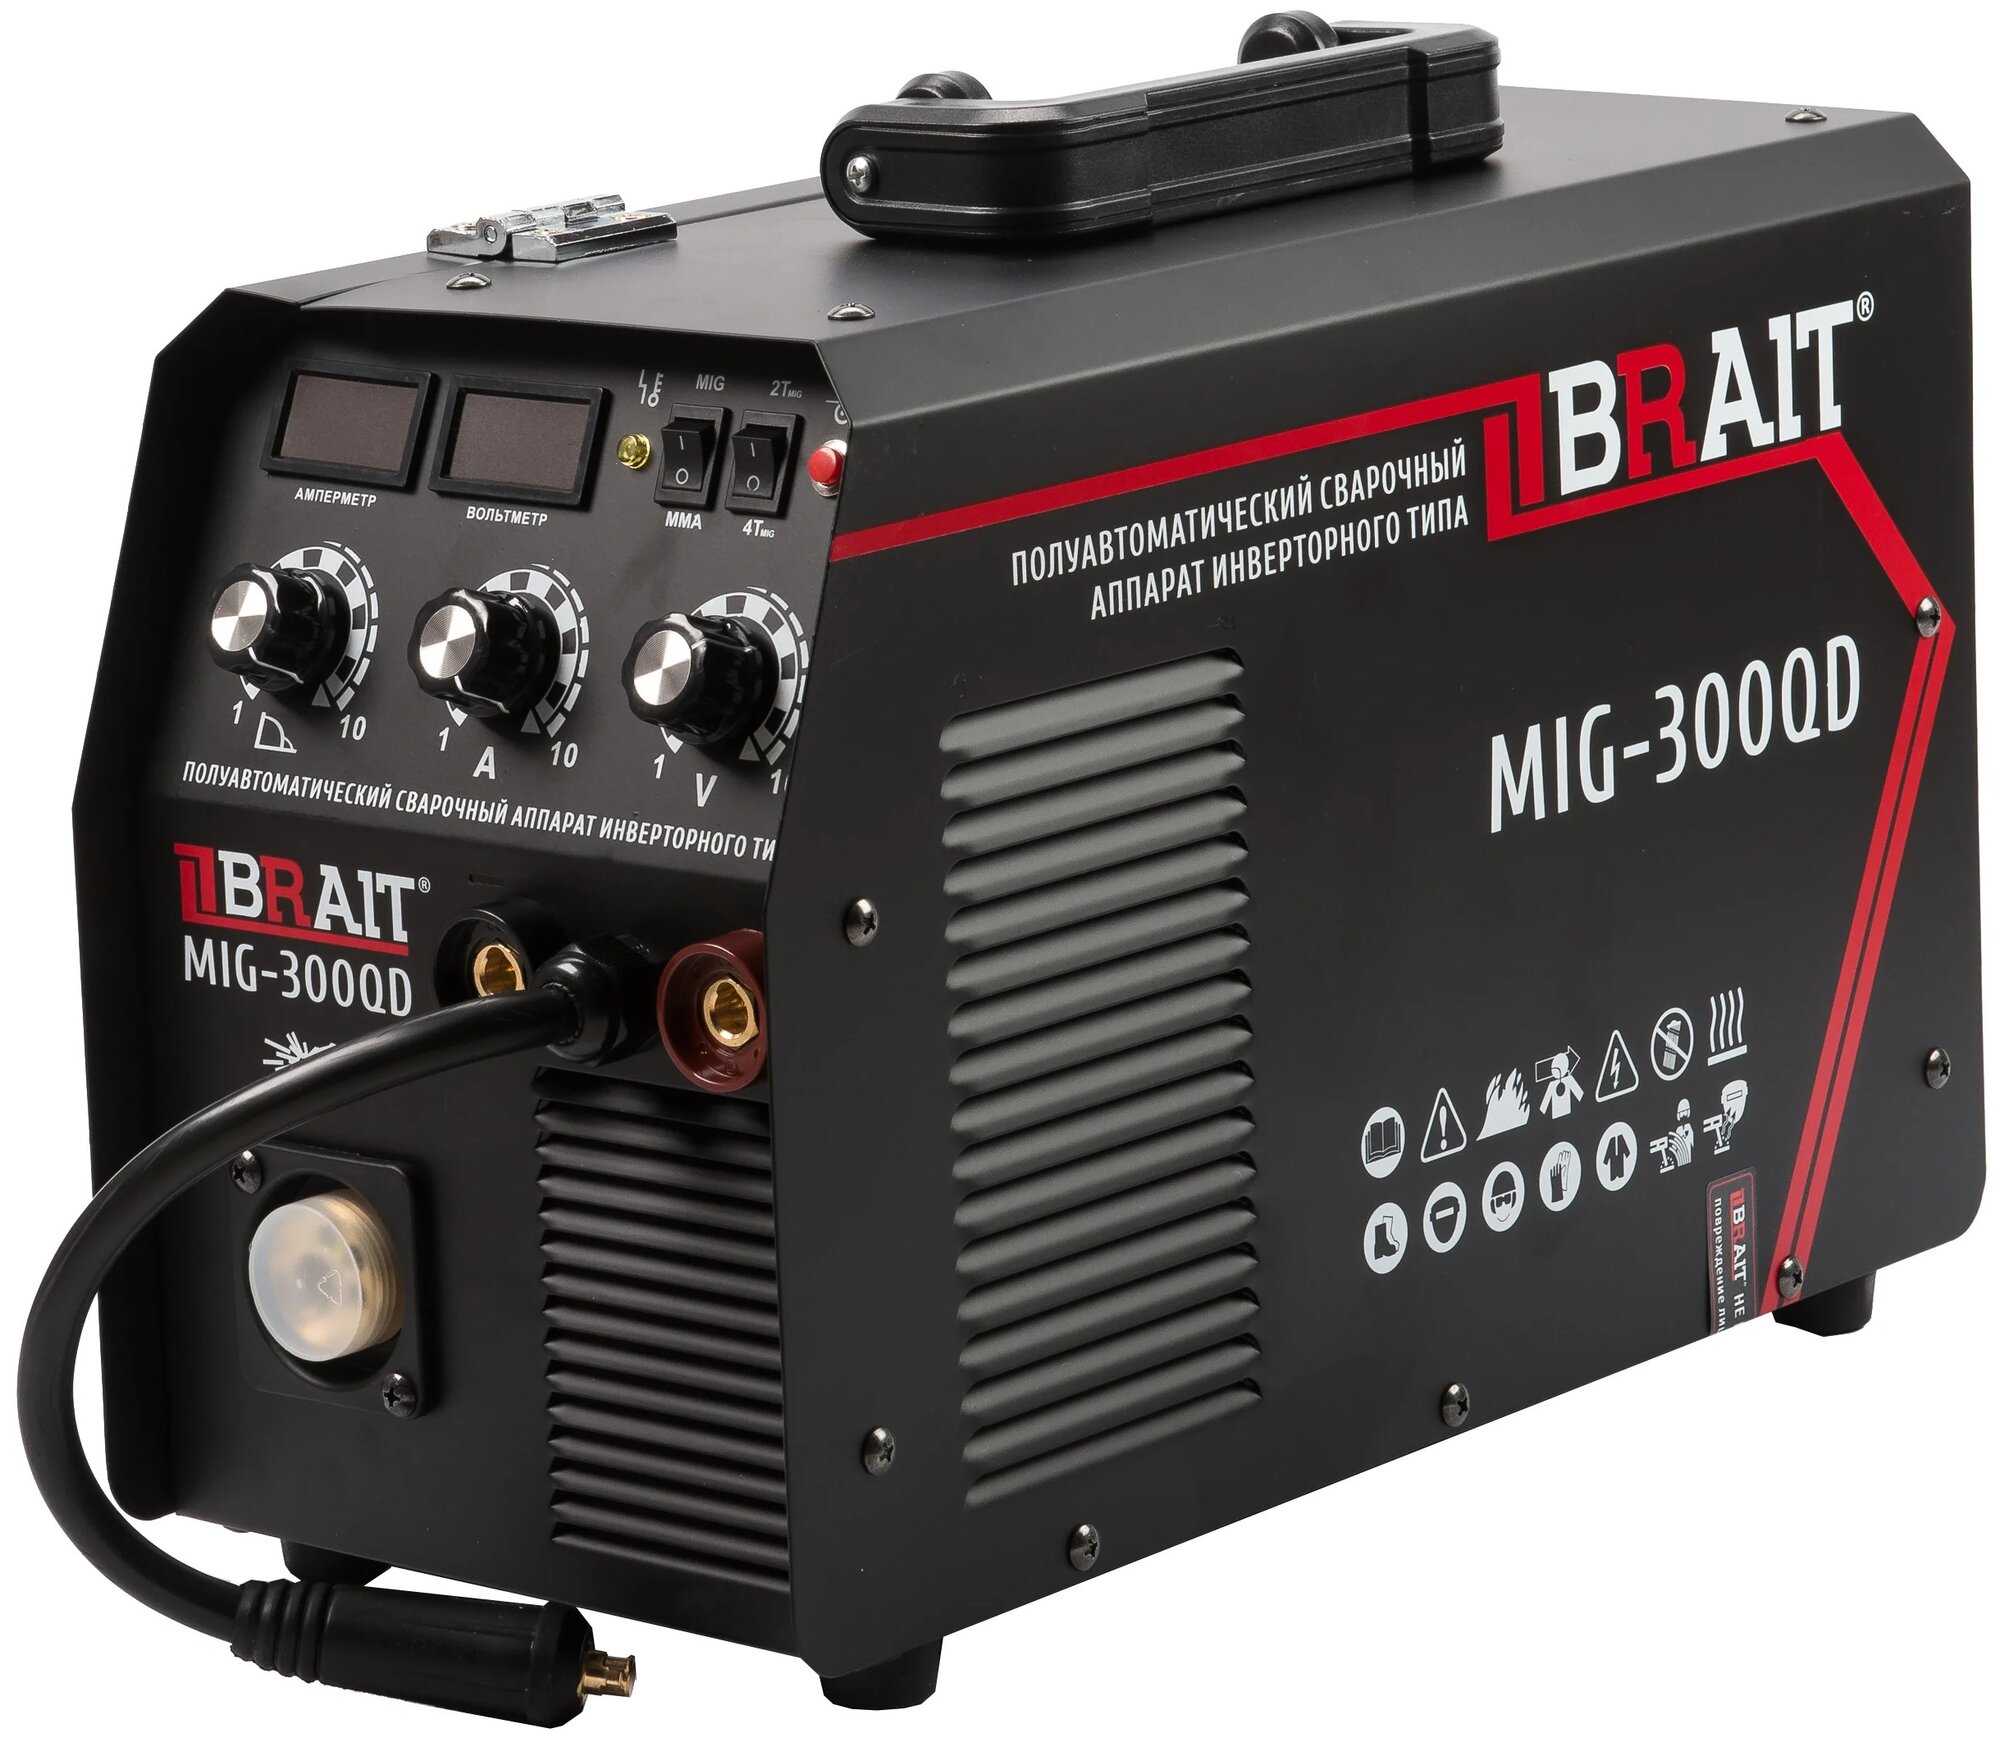 Сварочный аппарат инверторного типа BRAIT MIG-300QD, MMA, MIG/MAG